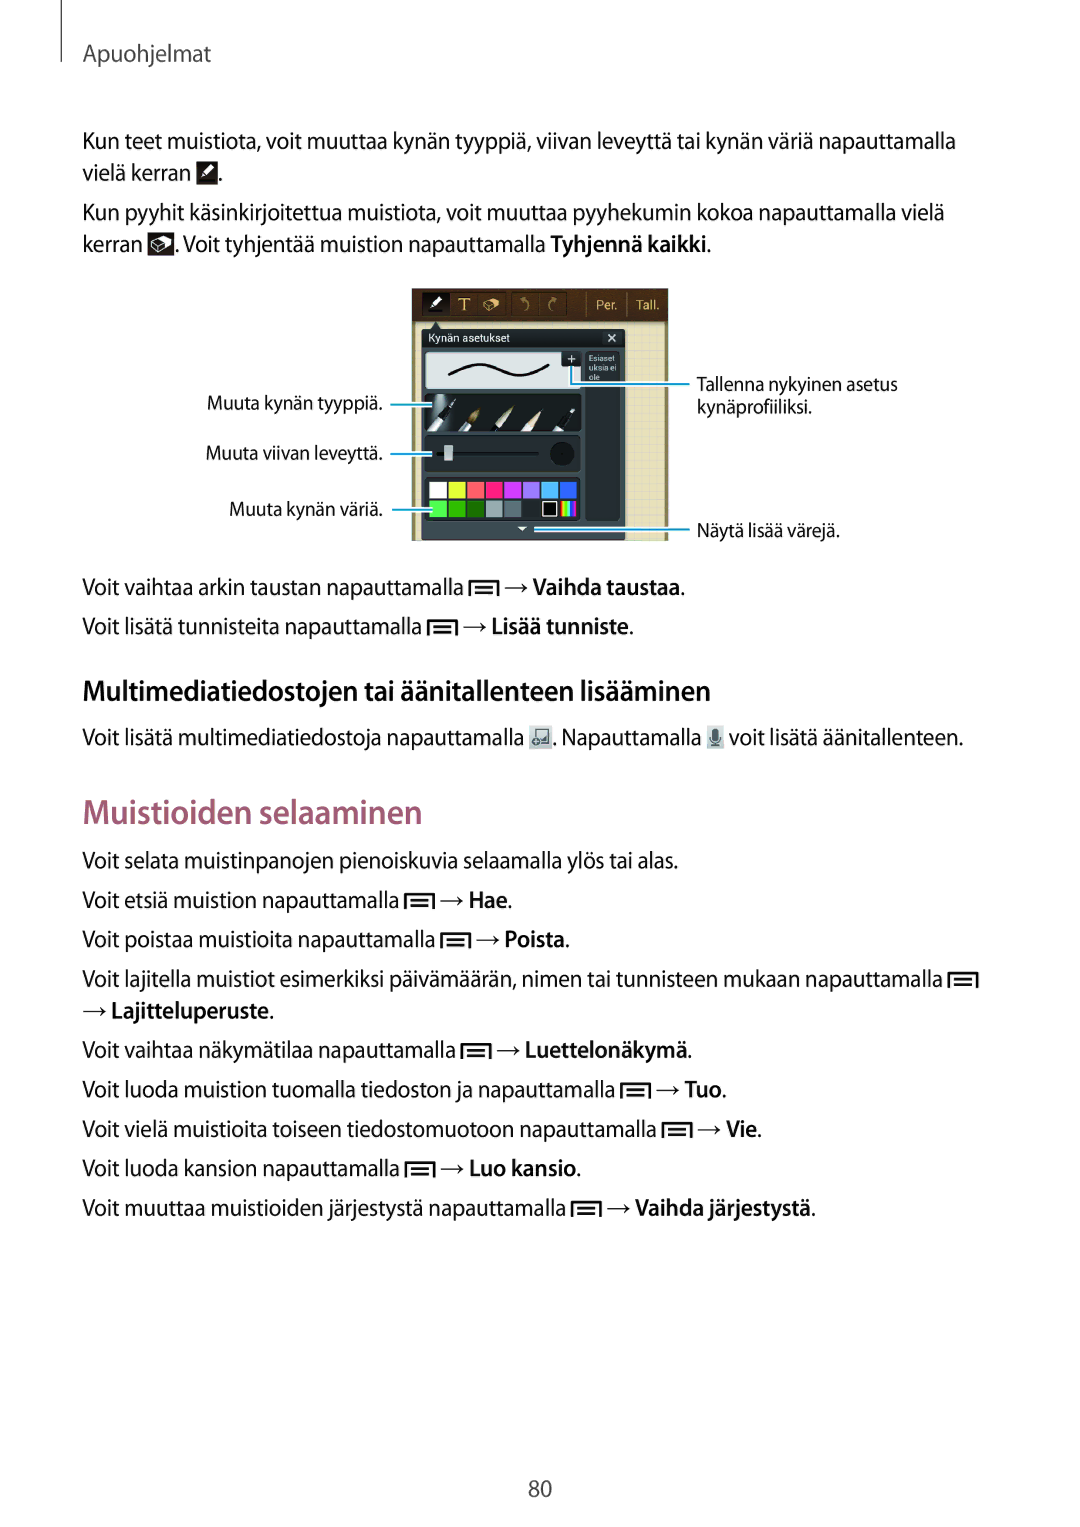 Samsung SM-G3815HKANEE, SM-G3815RWANEE manual Muistioiden selaaminen, Multimediatiedostojen tai äänitallenteen lisääminen 